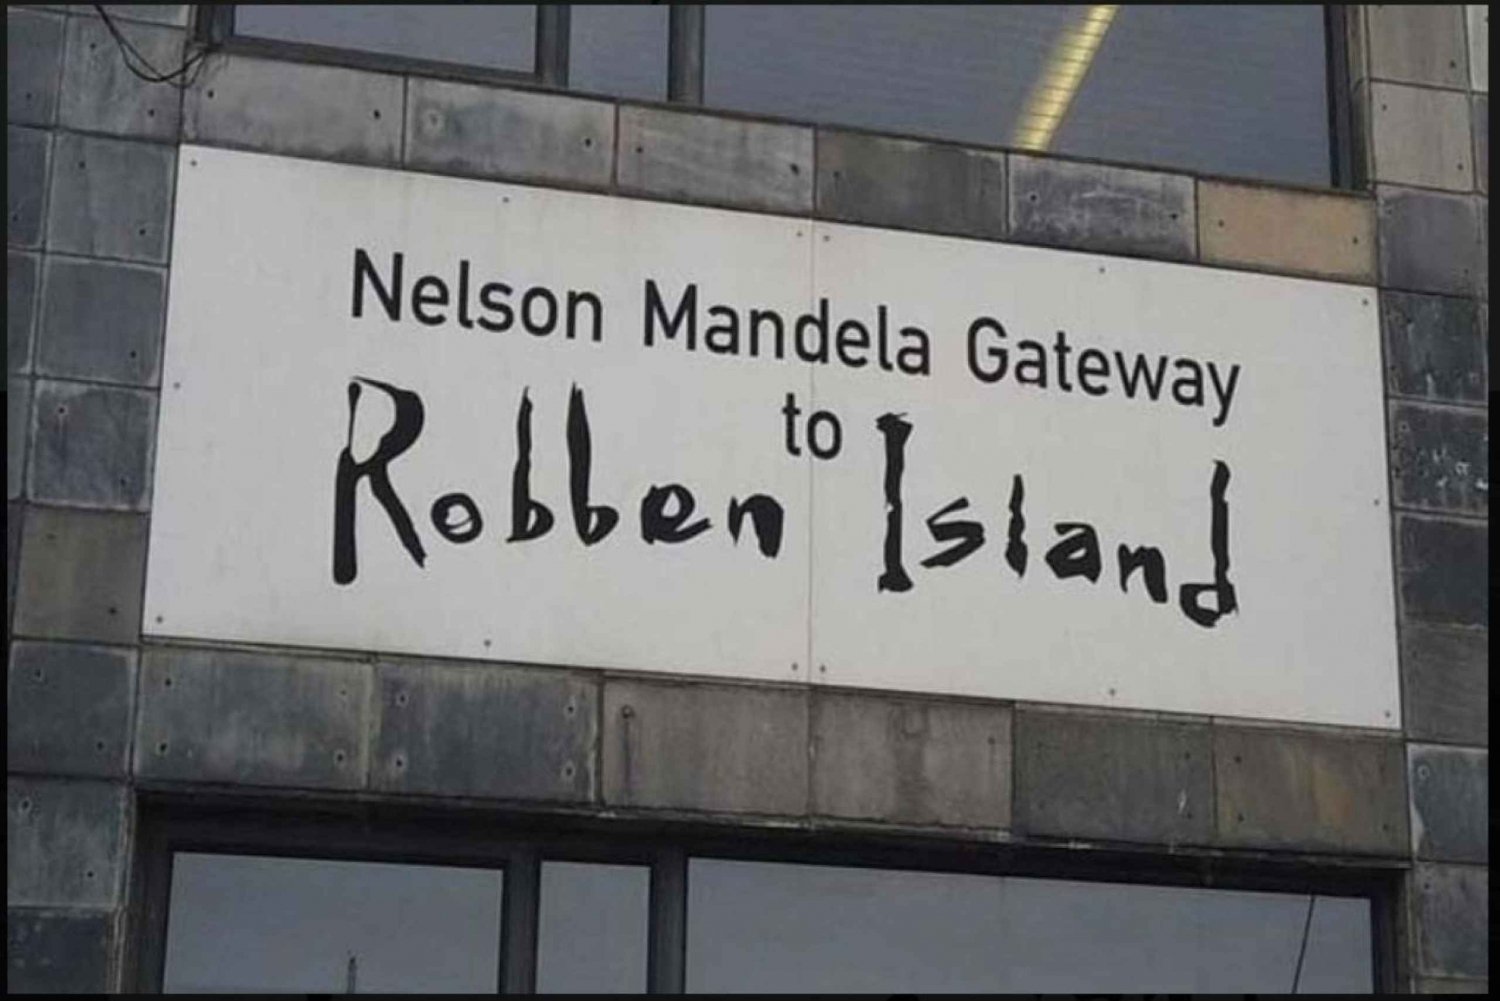 Tour di mezza giornata di Robben Island con biglietto prenotato in anticipo